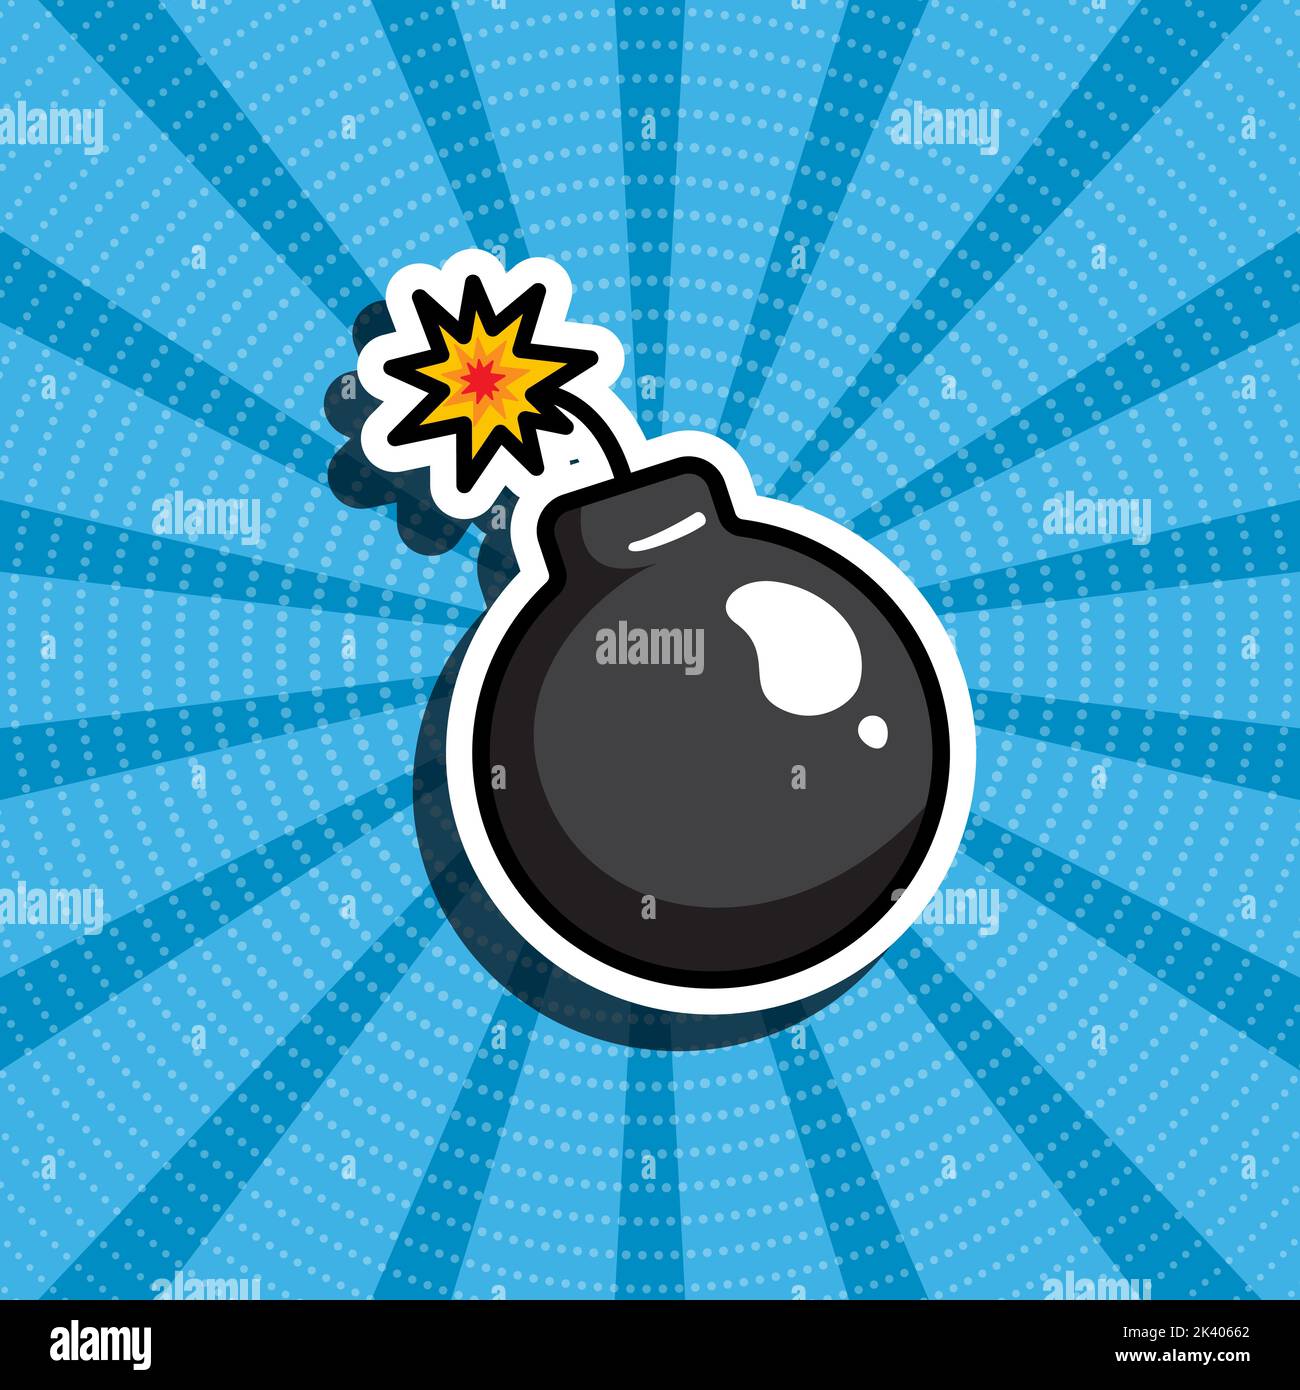 Cartoon-Illustration einer Bombe. Blauer Retro-Hintergrund. Comic-Stil, Pop-Art. Aufkleber, Patches, Pins. Stock Vektor